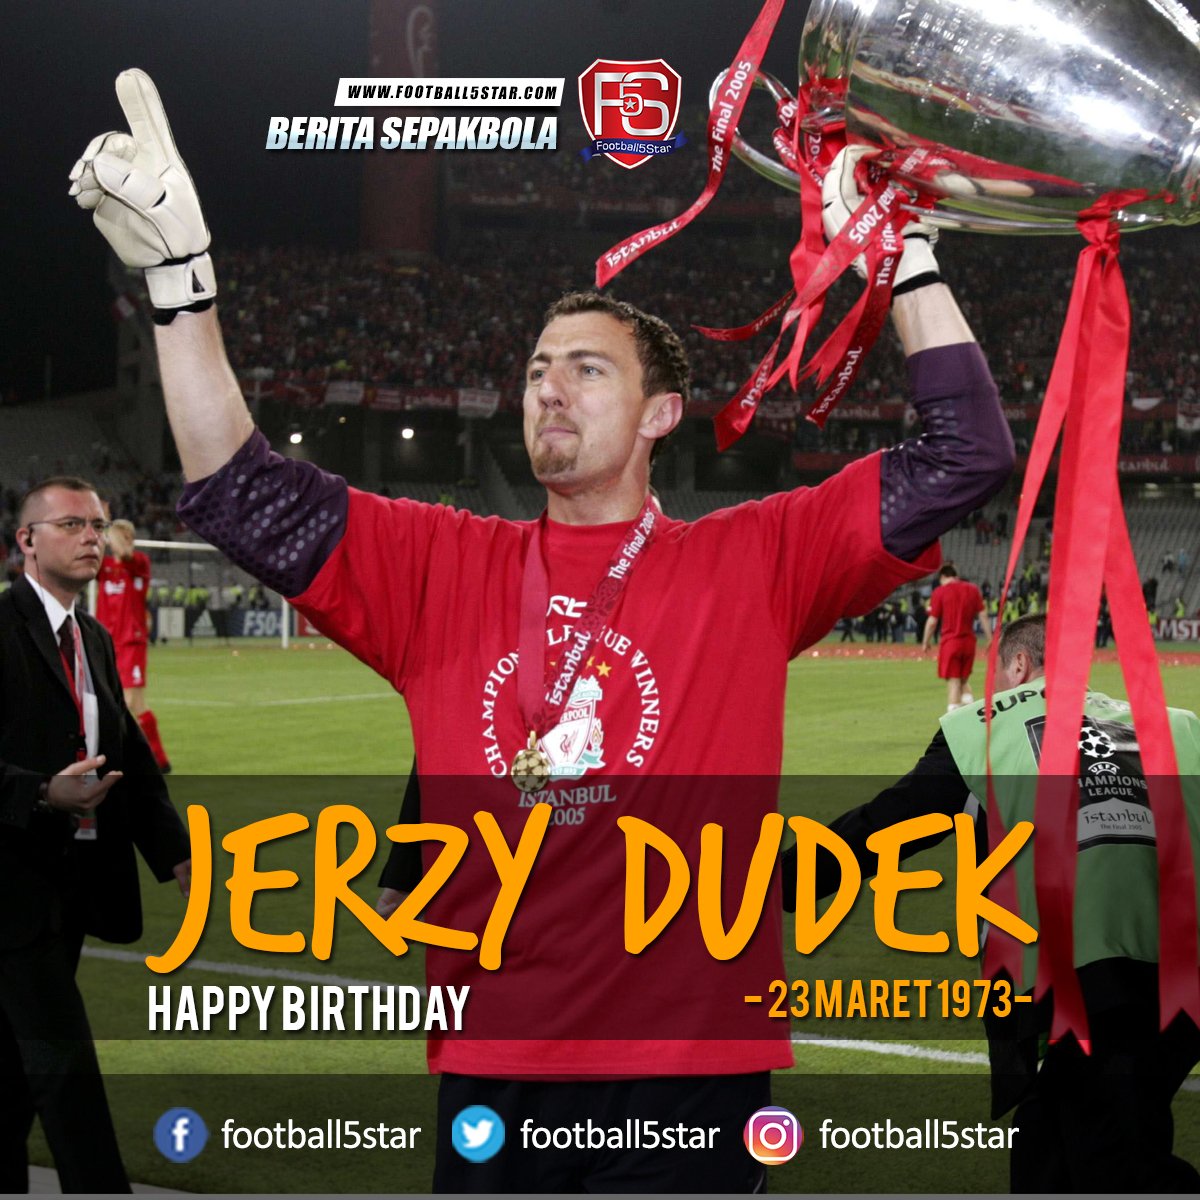 Kalian masih ingat dengan Jerzy Dudek guys? hari ini dia berulang tahun, Happy Birthday Jerzy Dudek 23 Maret1973 